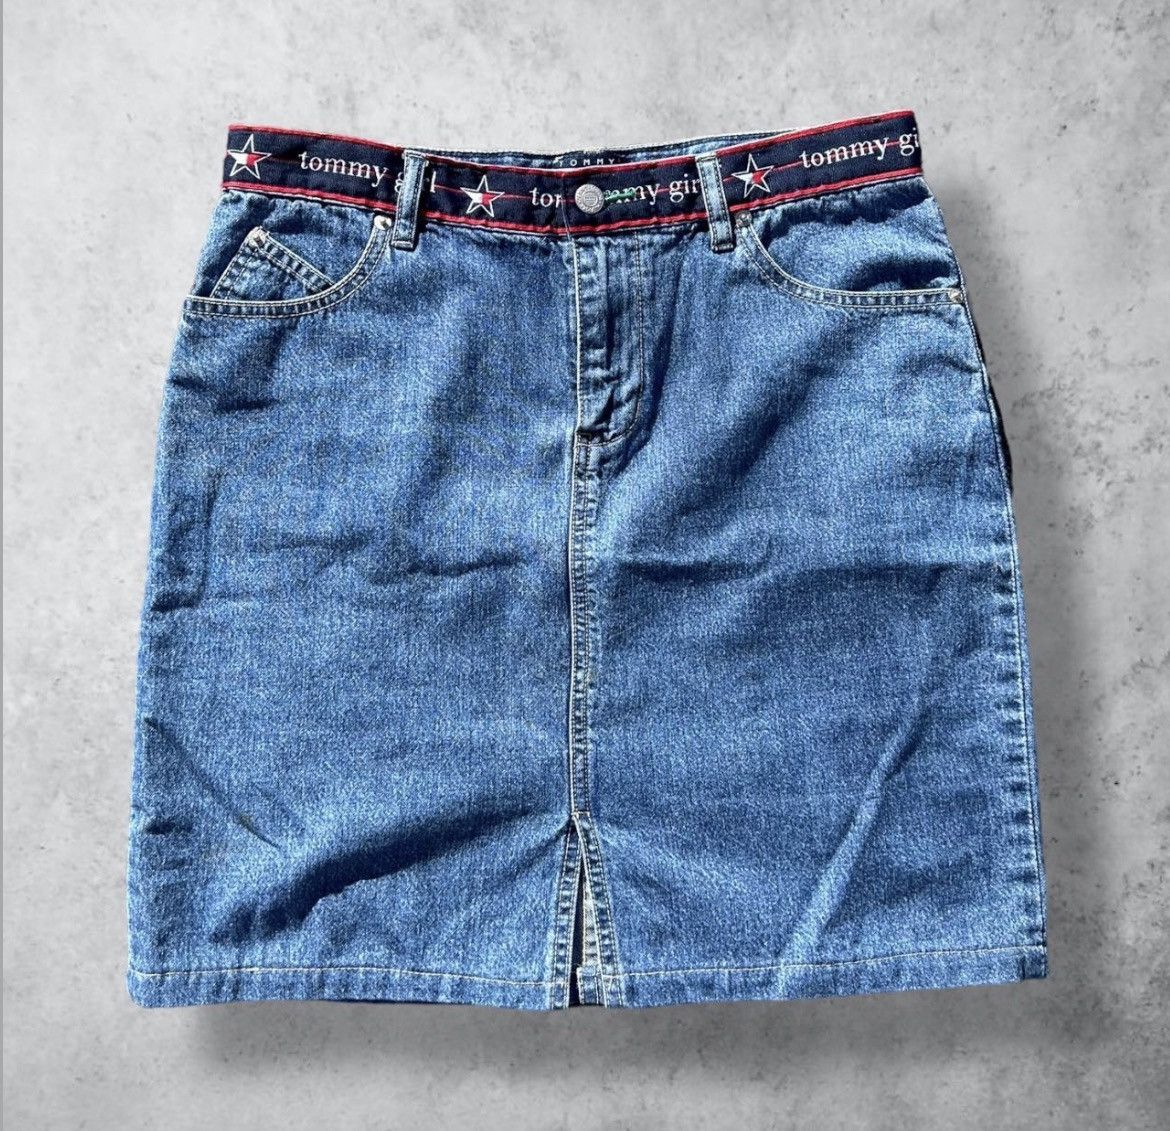 Vintage Vintage Tommy Hilfiger Tommy Girl Mini Denim Jean Skirt Size 30" / US 8 / IT 44 - 1 Preview